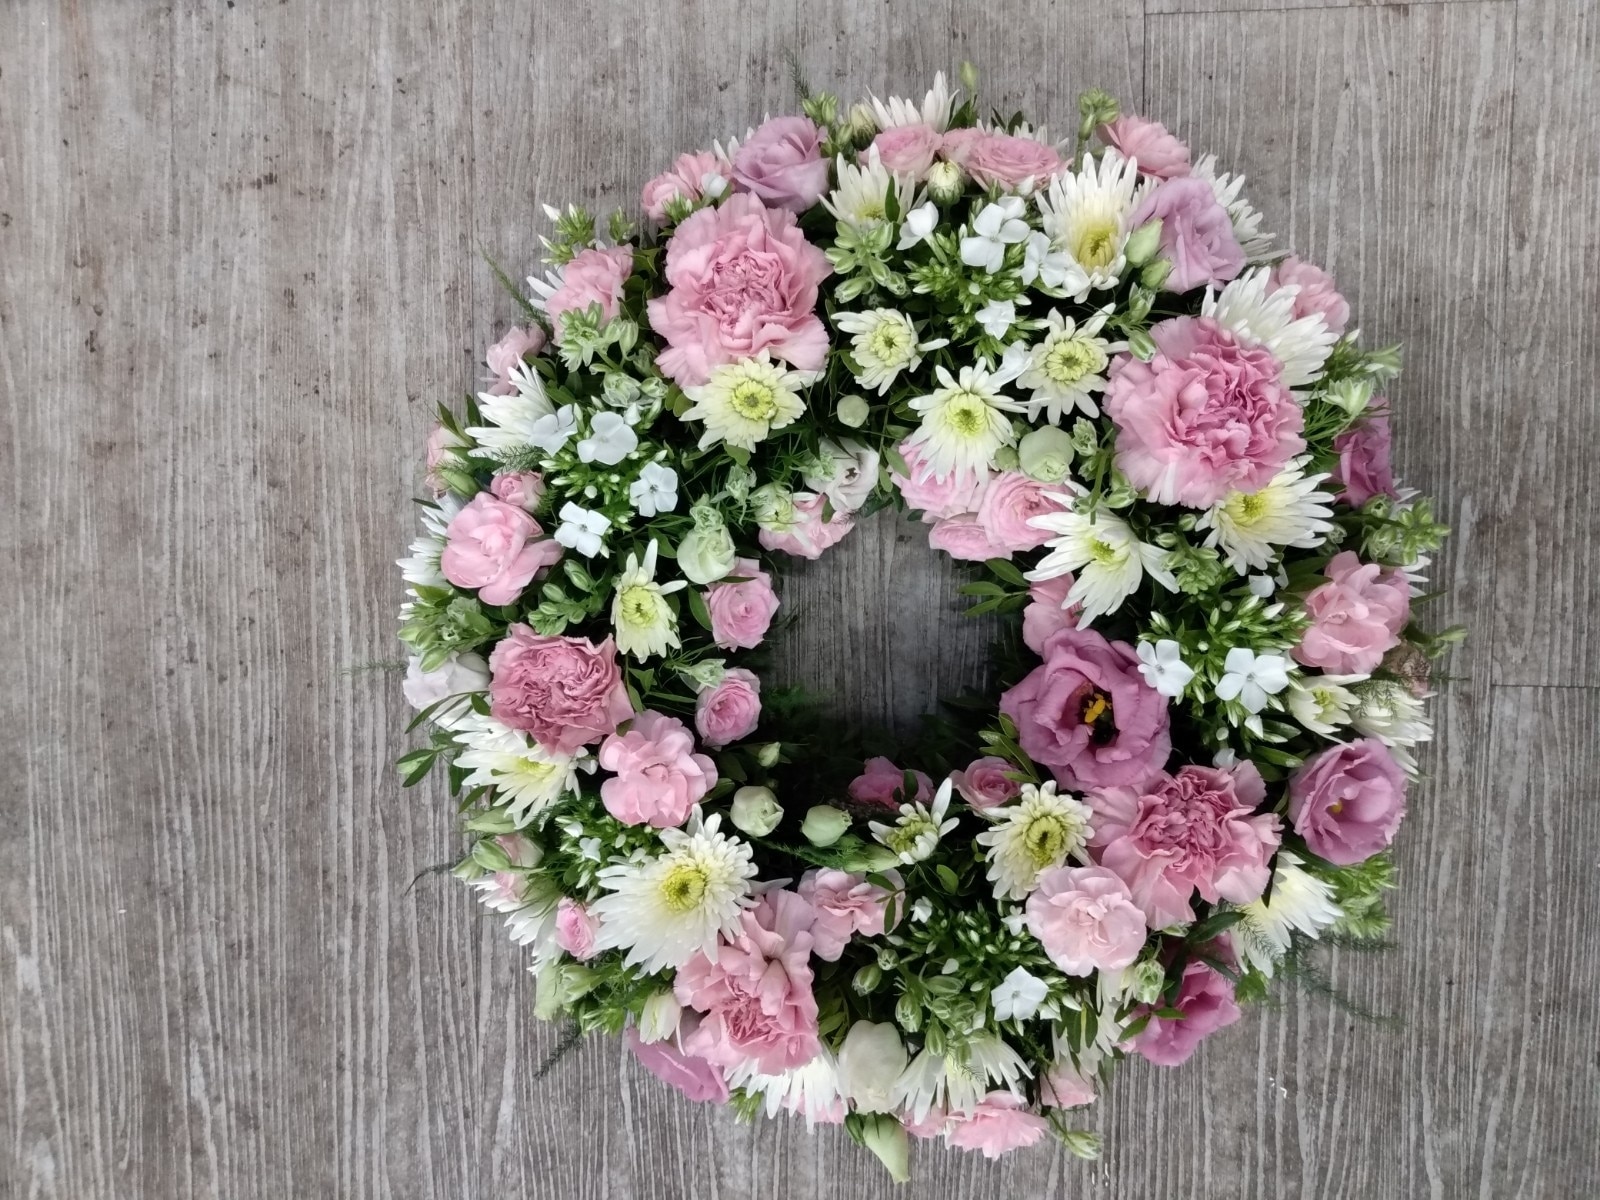 Florist Choice Wreath Pastel Funeral Arrangement